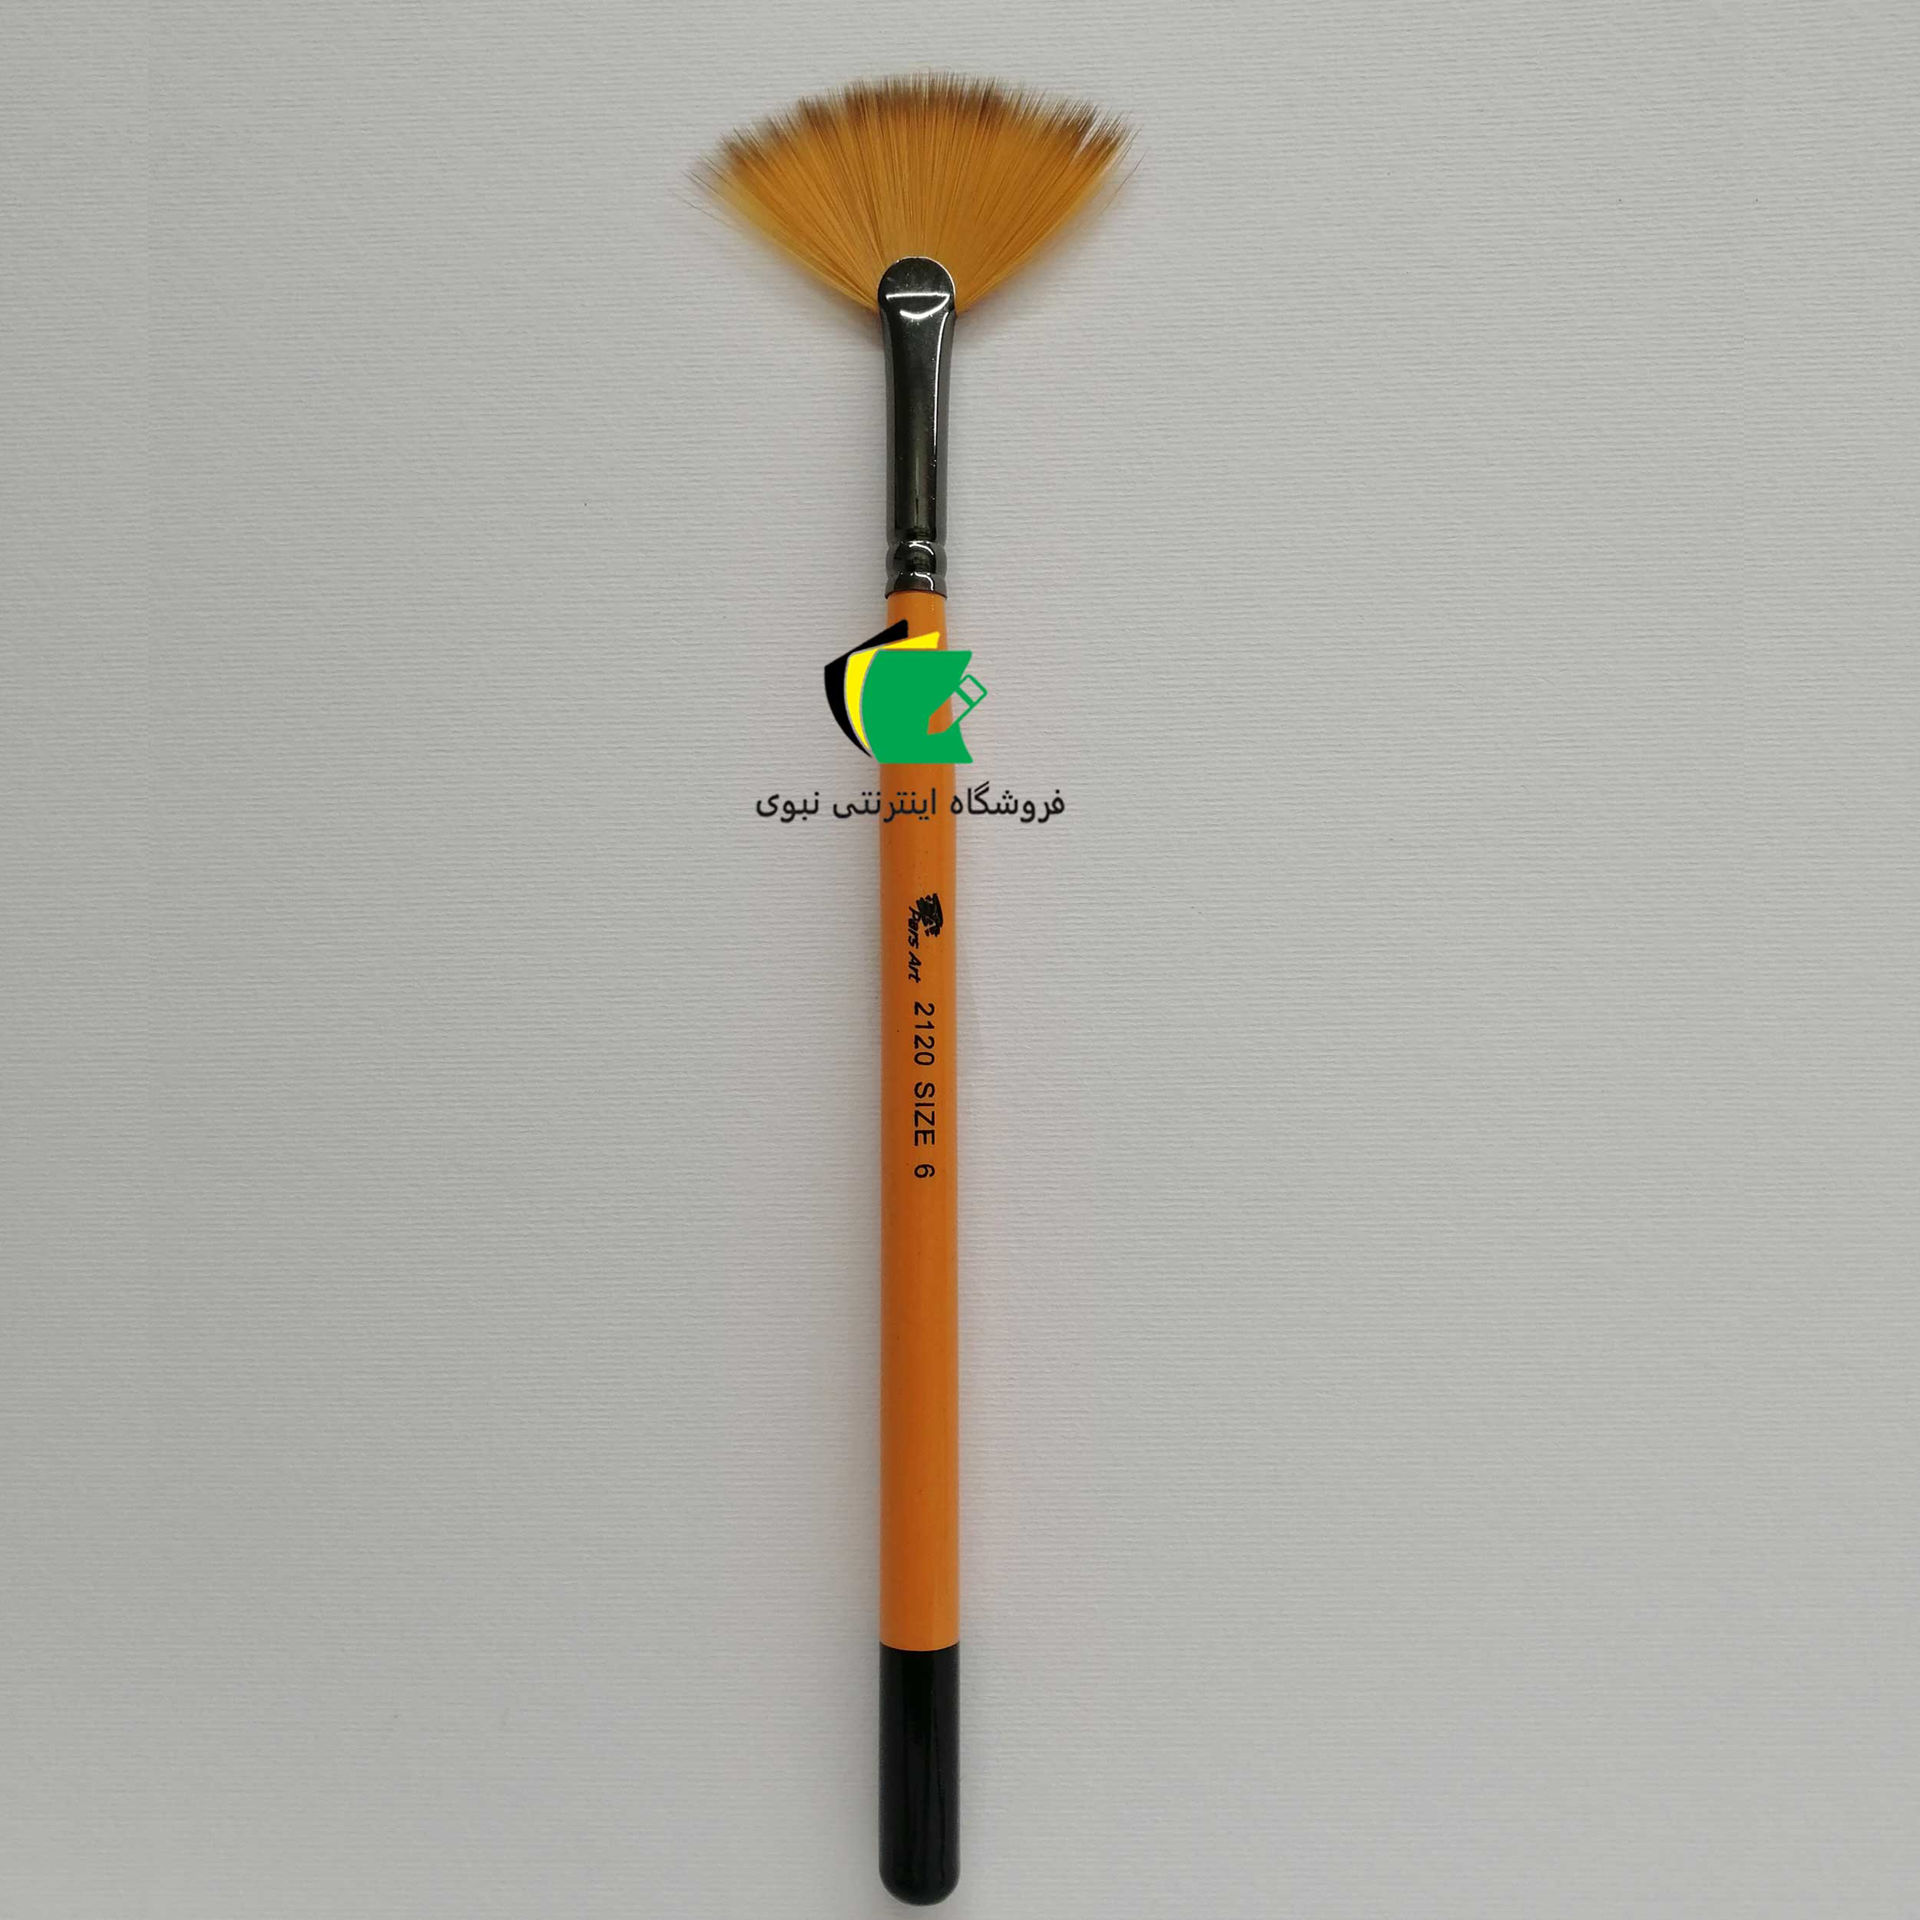 قلمو بادبزنی پارس آرت مدل قلم مو چتری پارس آرت 2120